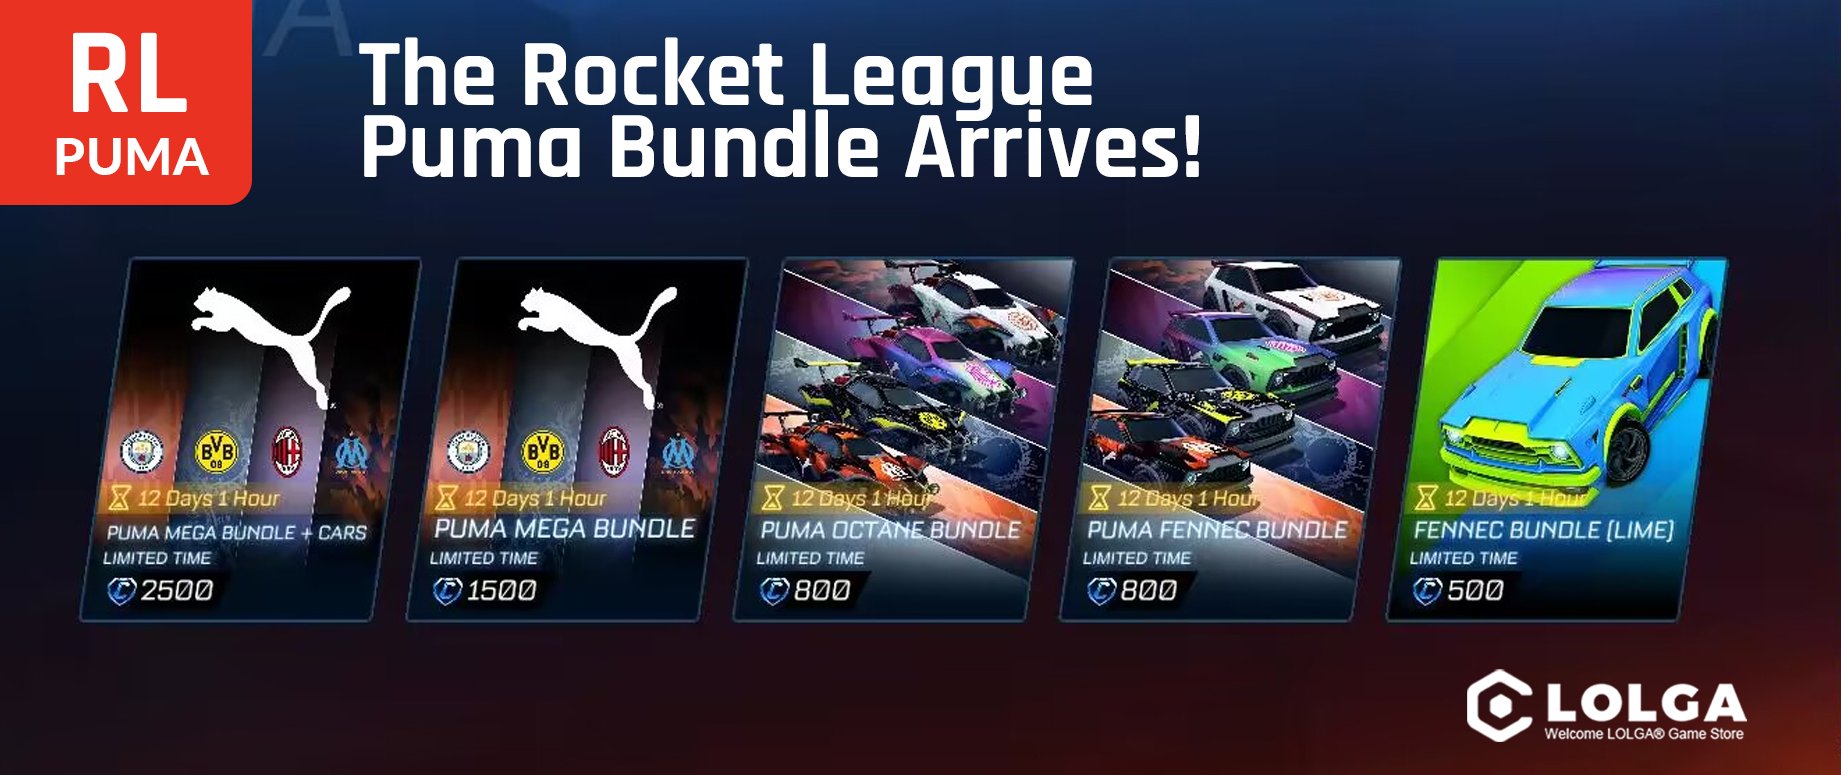 The Rocket League Puma Bundle Arrives!